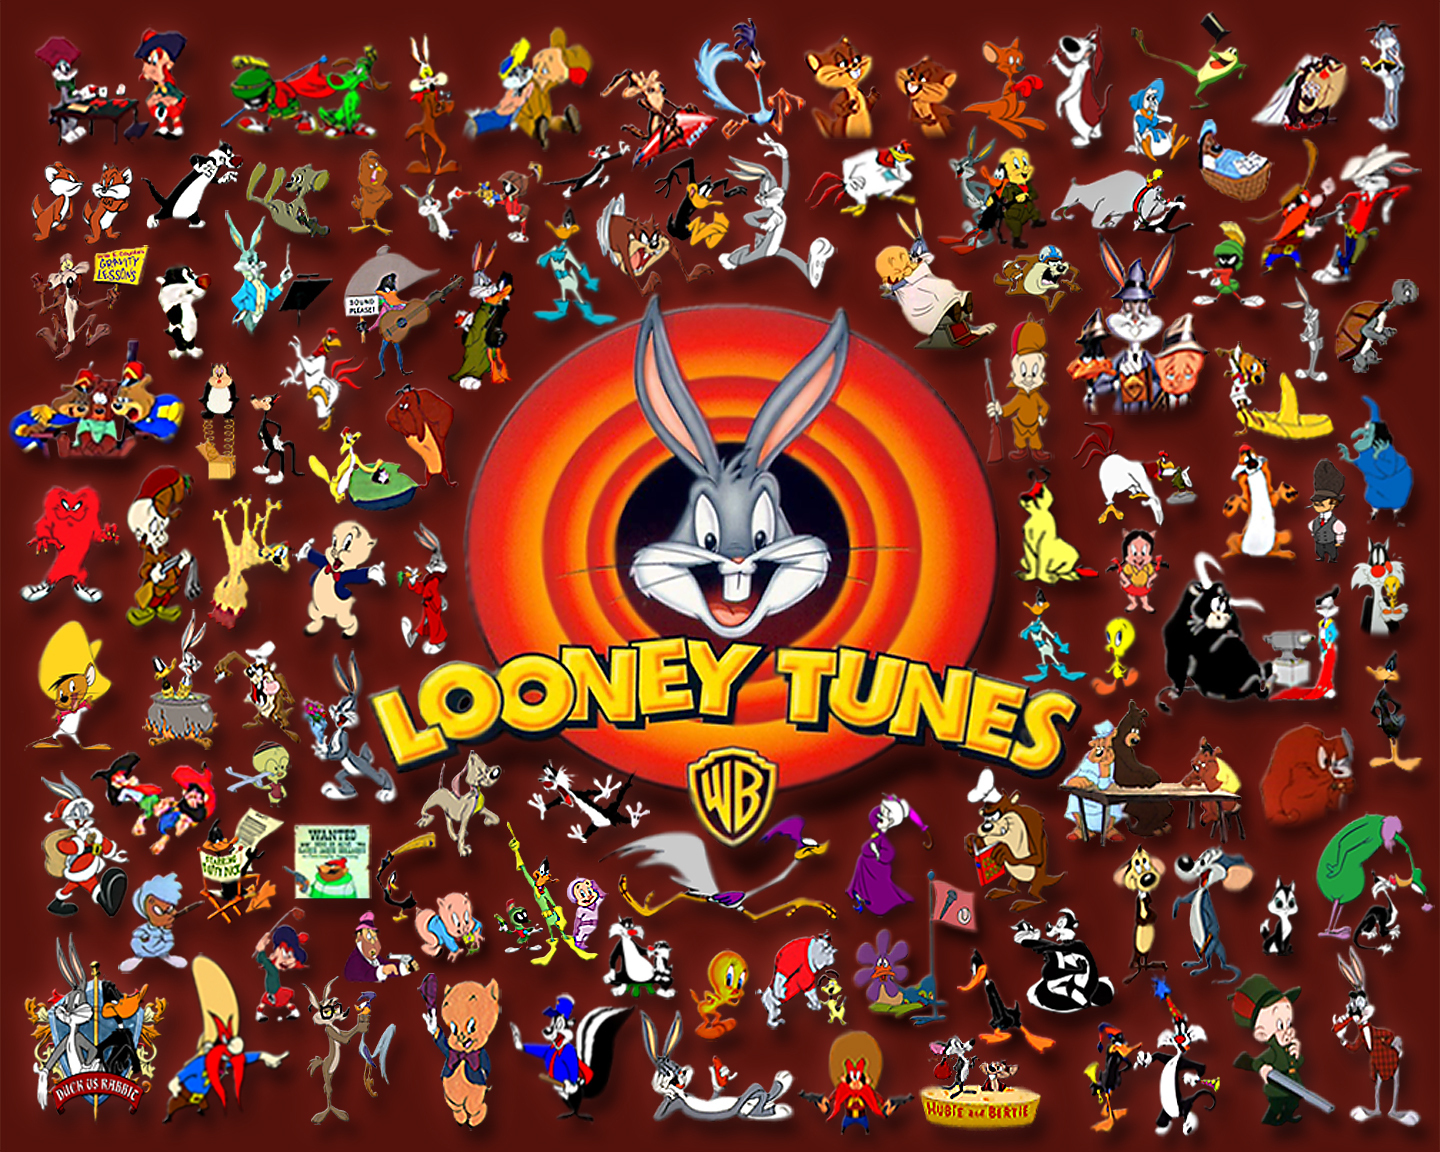 Looney Tunes #20